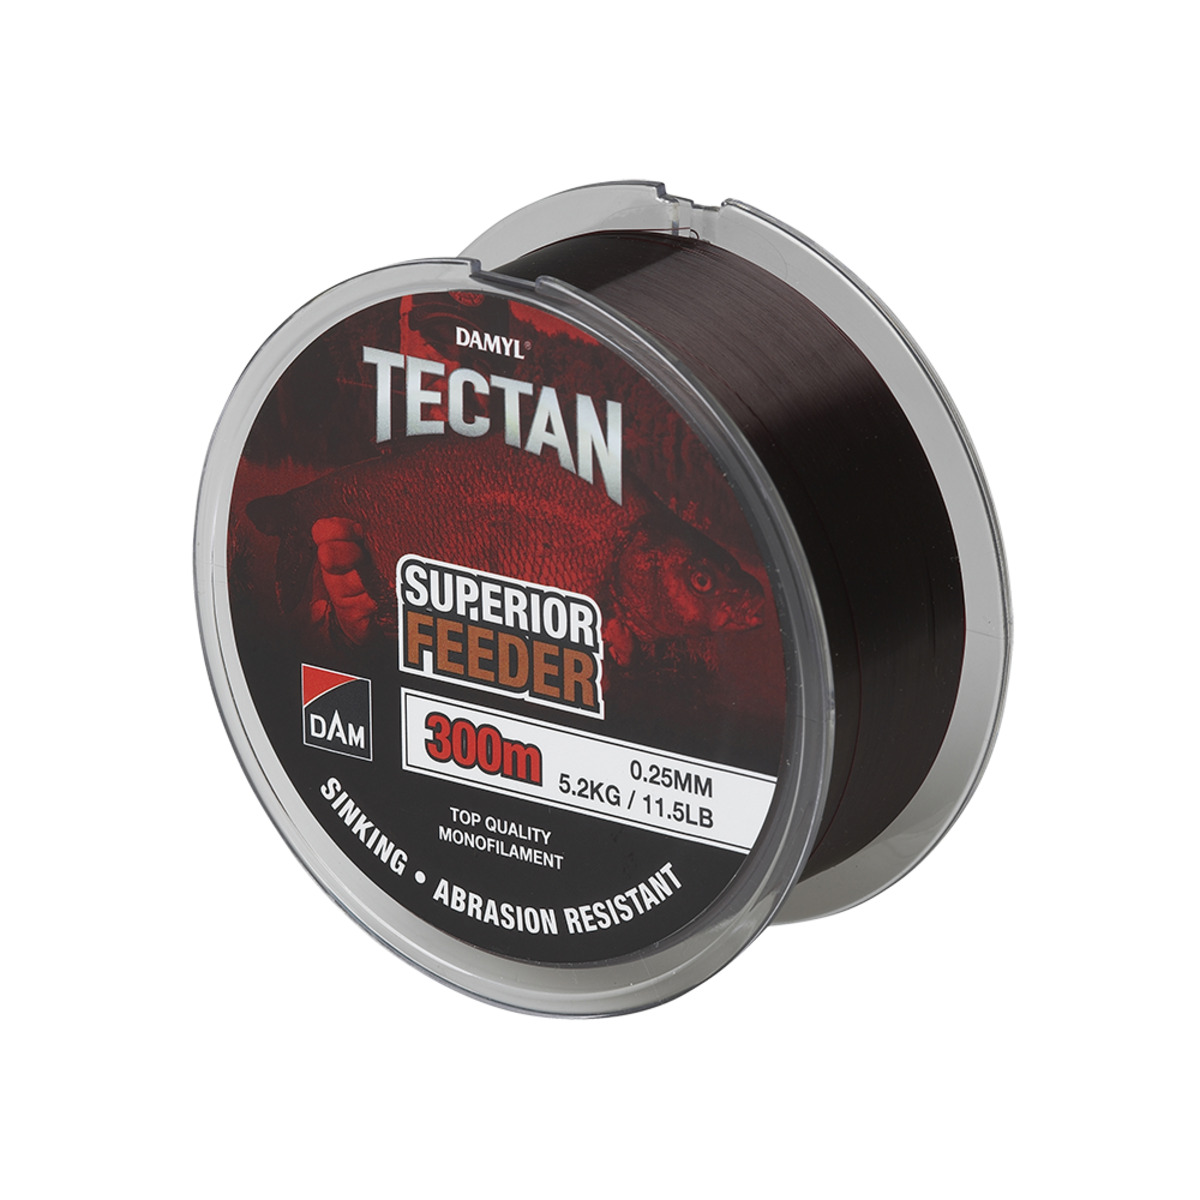 Dam Tectan Superior Feeder 300m - 0.25MM 5.2KG 11.5LBS BROWN